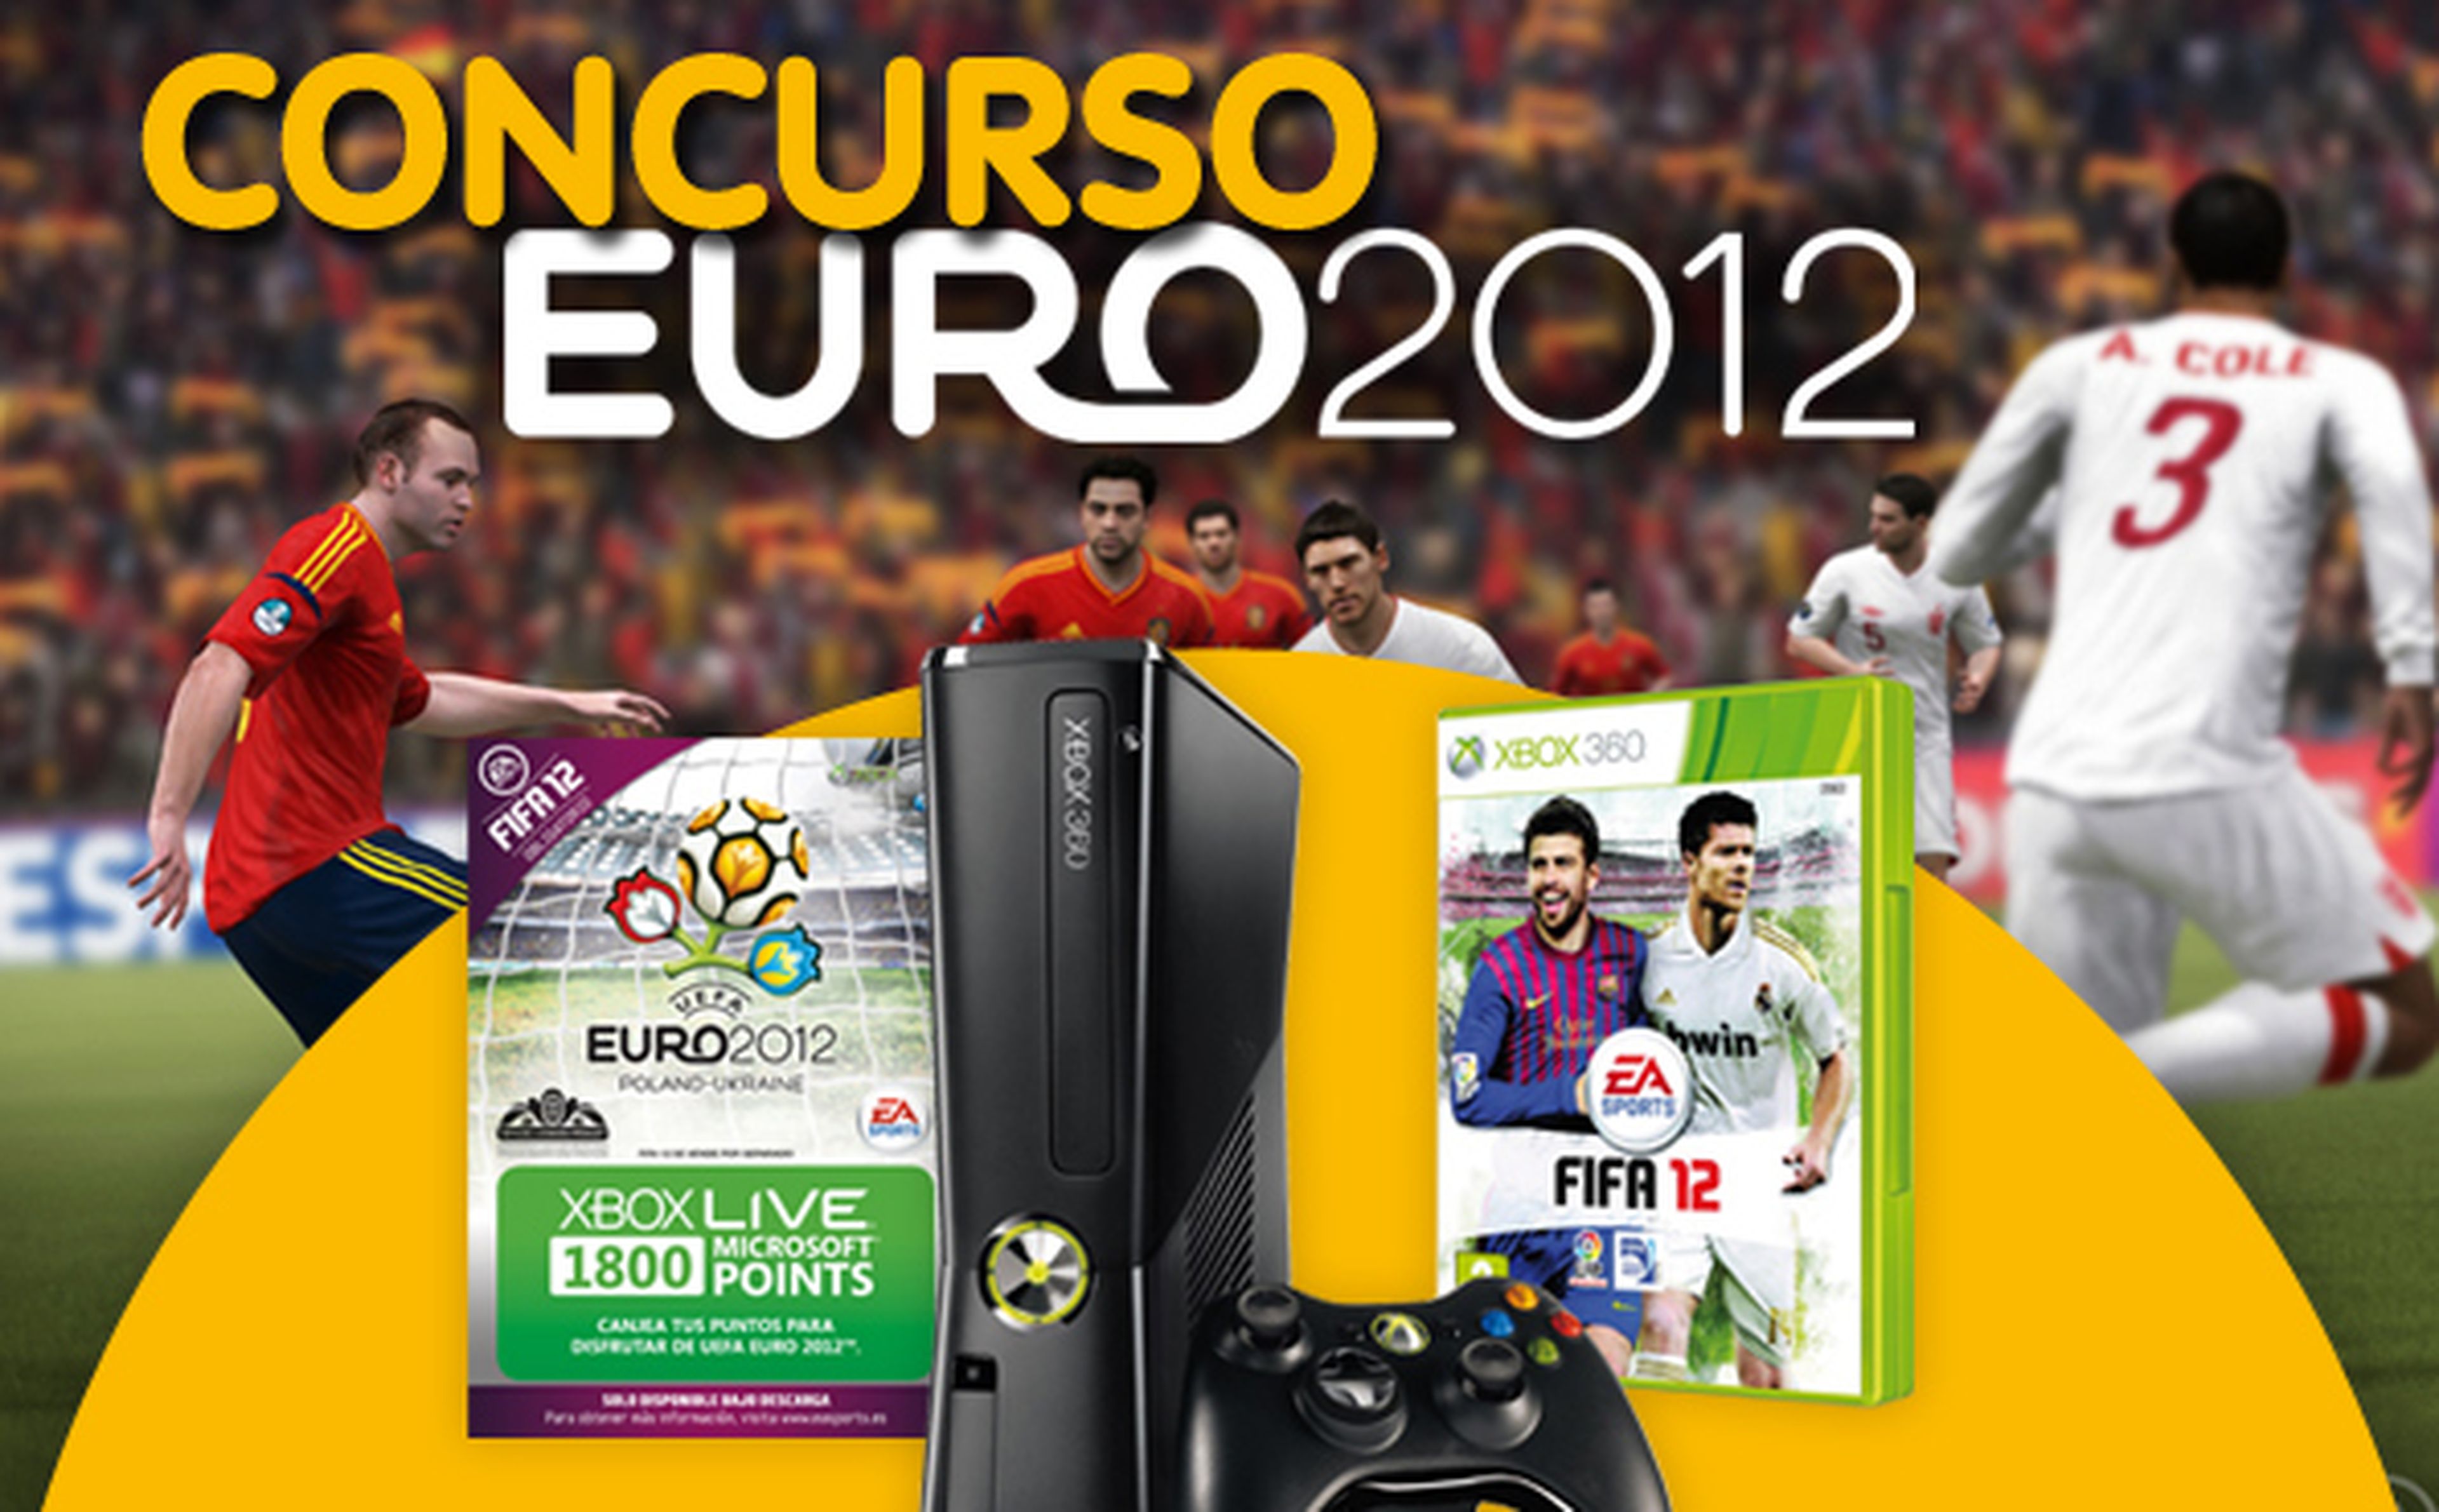 Concurso Euro 2012 en Hobby Consolas